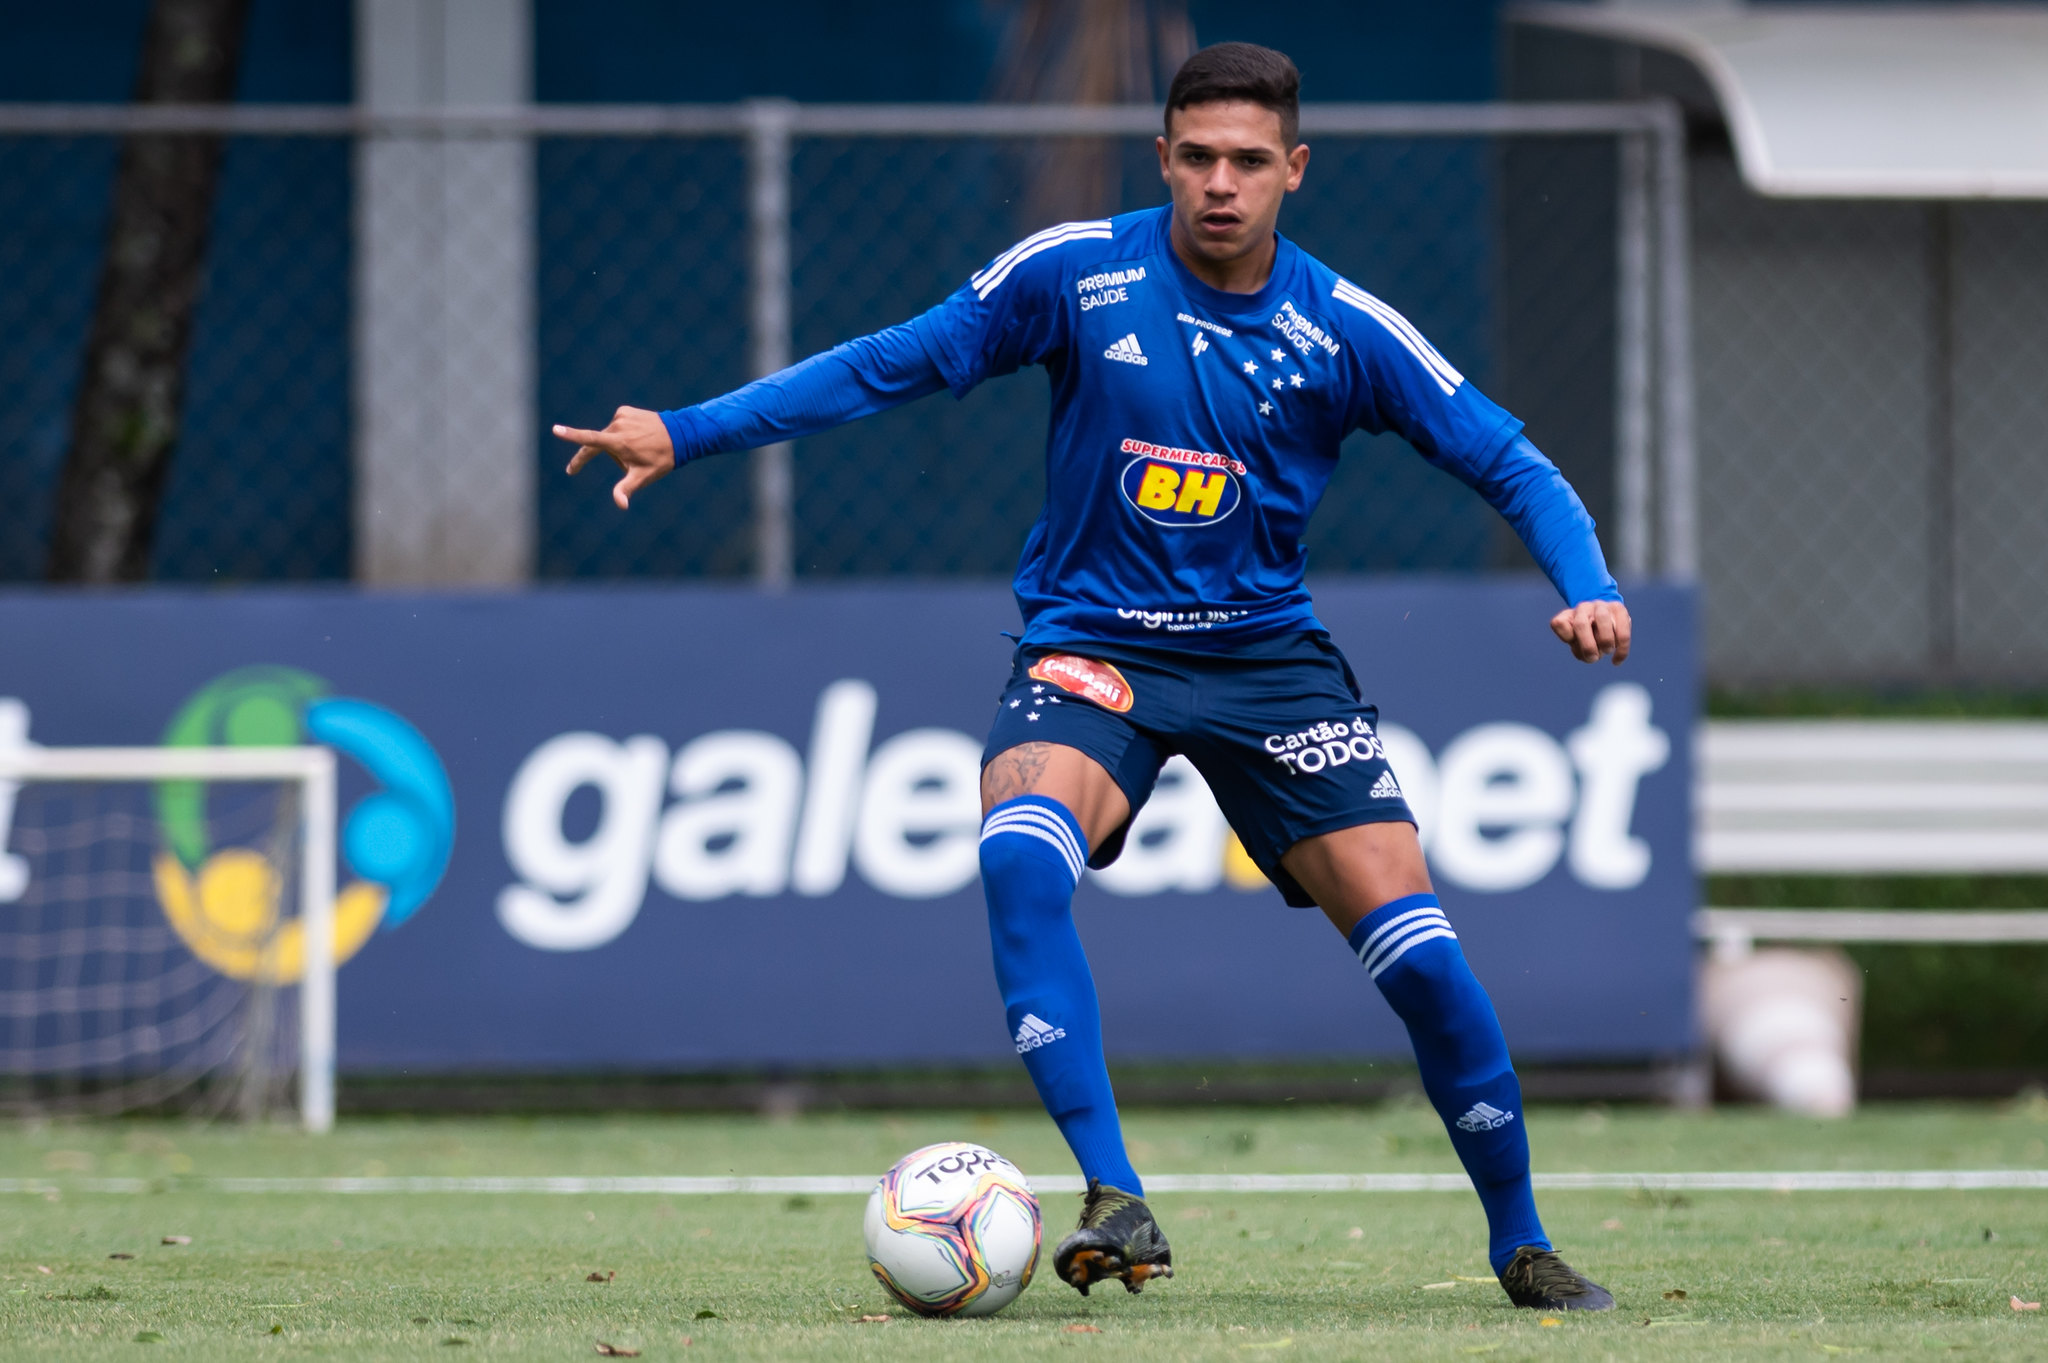 Após faltar treino, Jadsom aciona Cruzeiro na Justiça e pede rescisão